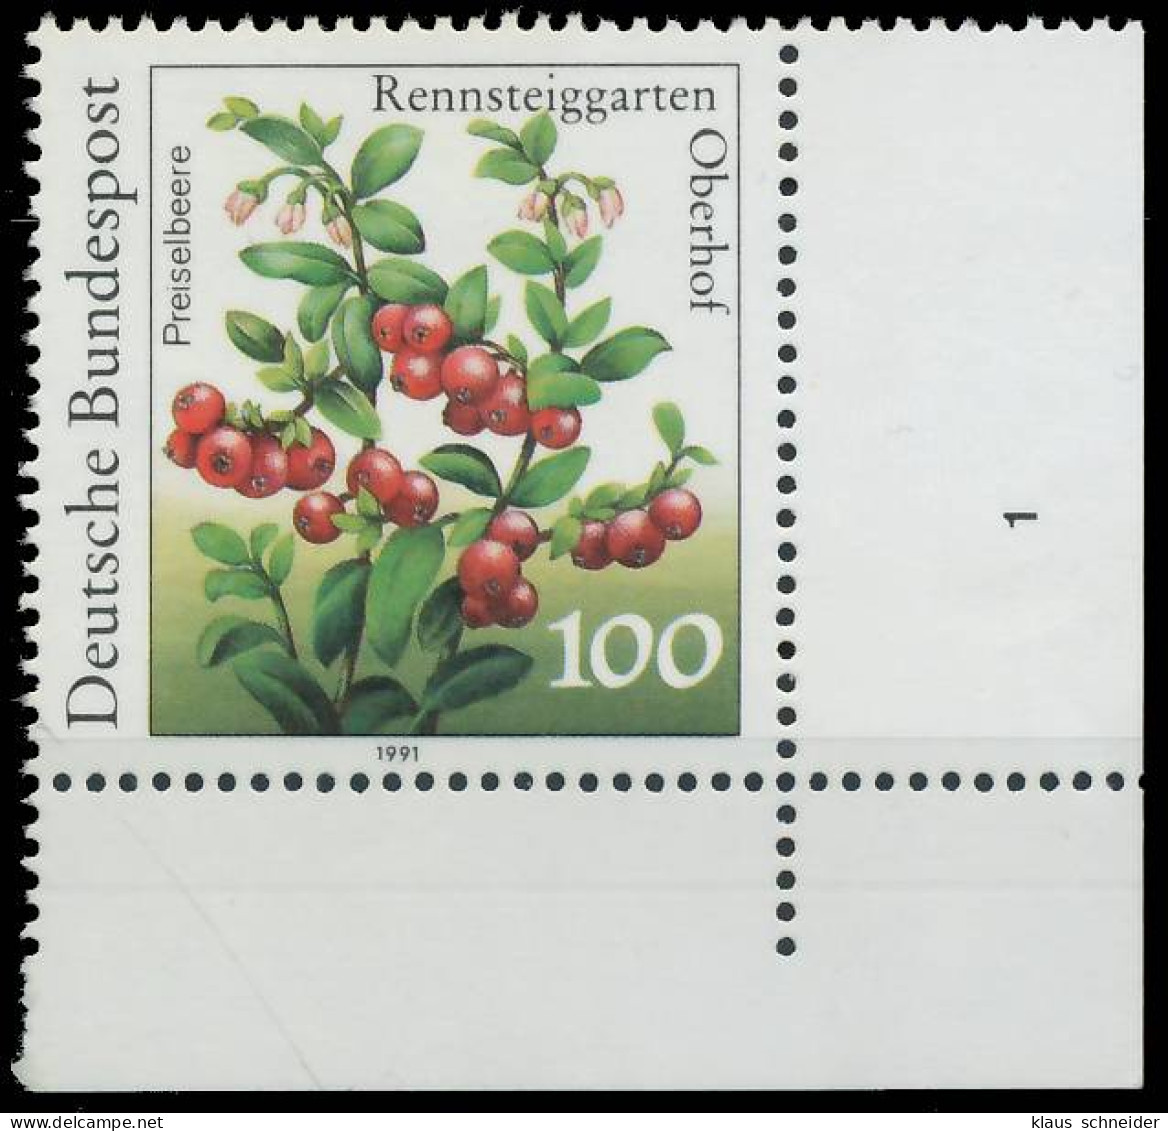 BRD BUND 1991 Nr 1508 Postfrisch FORMNUMMER 1 X575BD2 - Unused Stamps